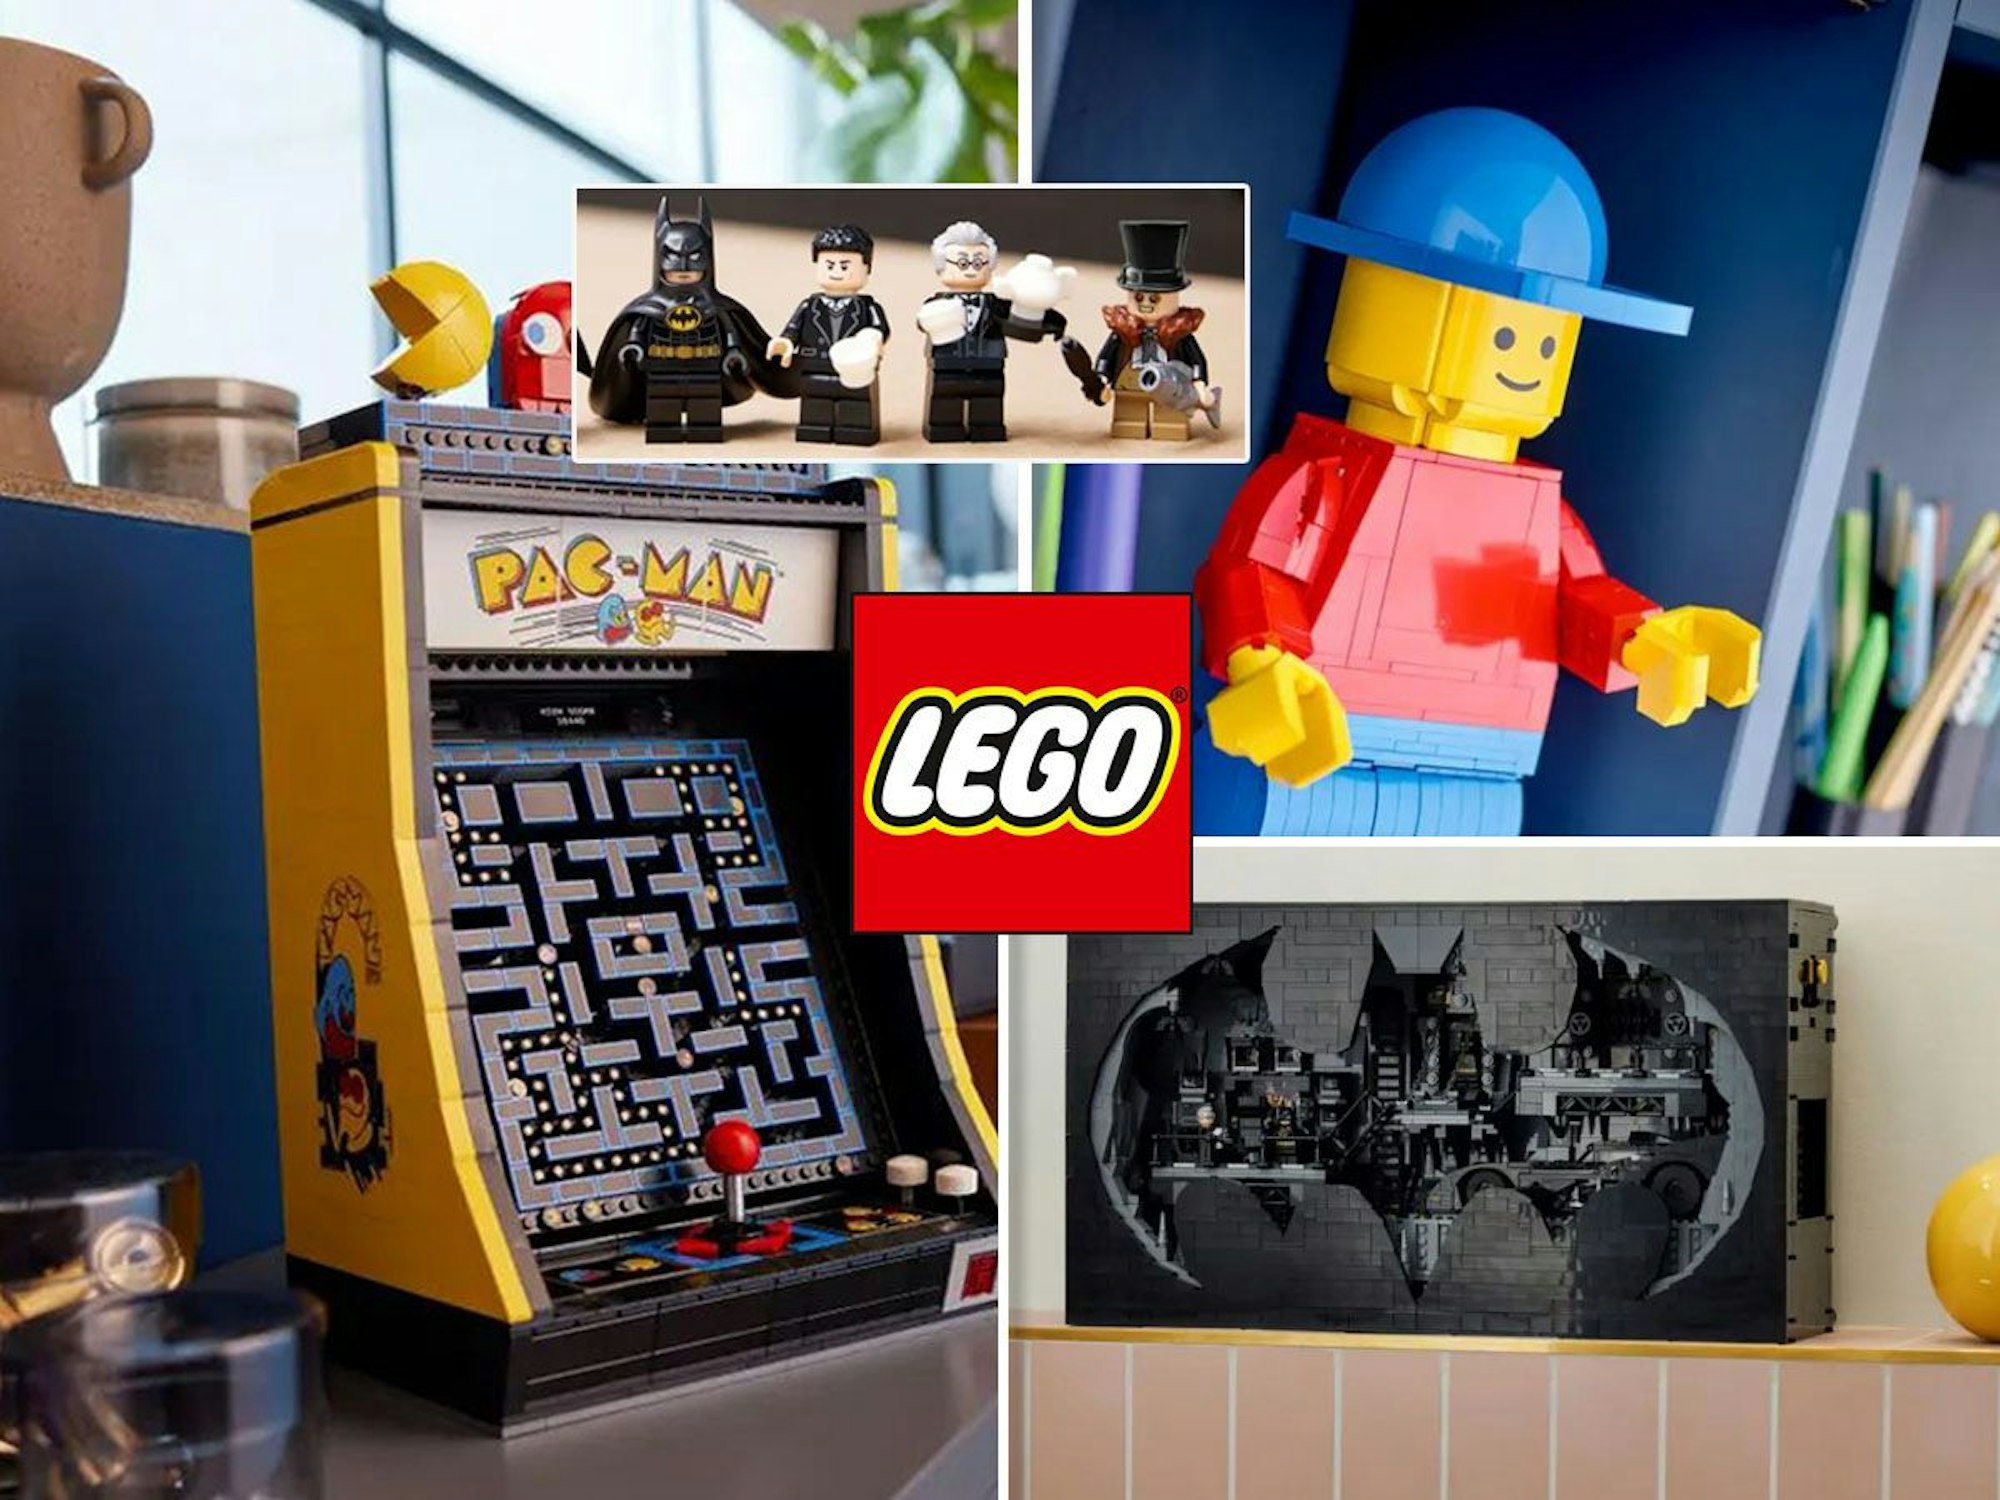 Marketing-Bilder der Lego-Neuheiten PAC-MAN Spielautomat (10323), Bathöhle Schaukasten (76252), große Lego Minifigur (40649).